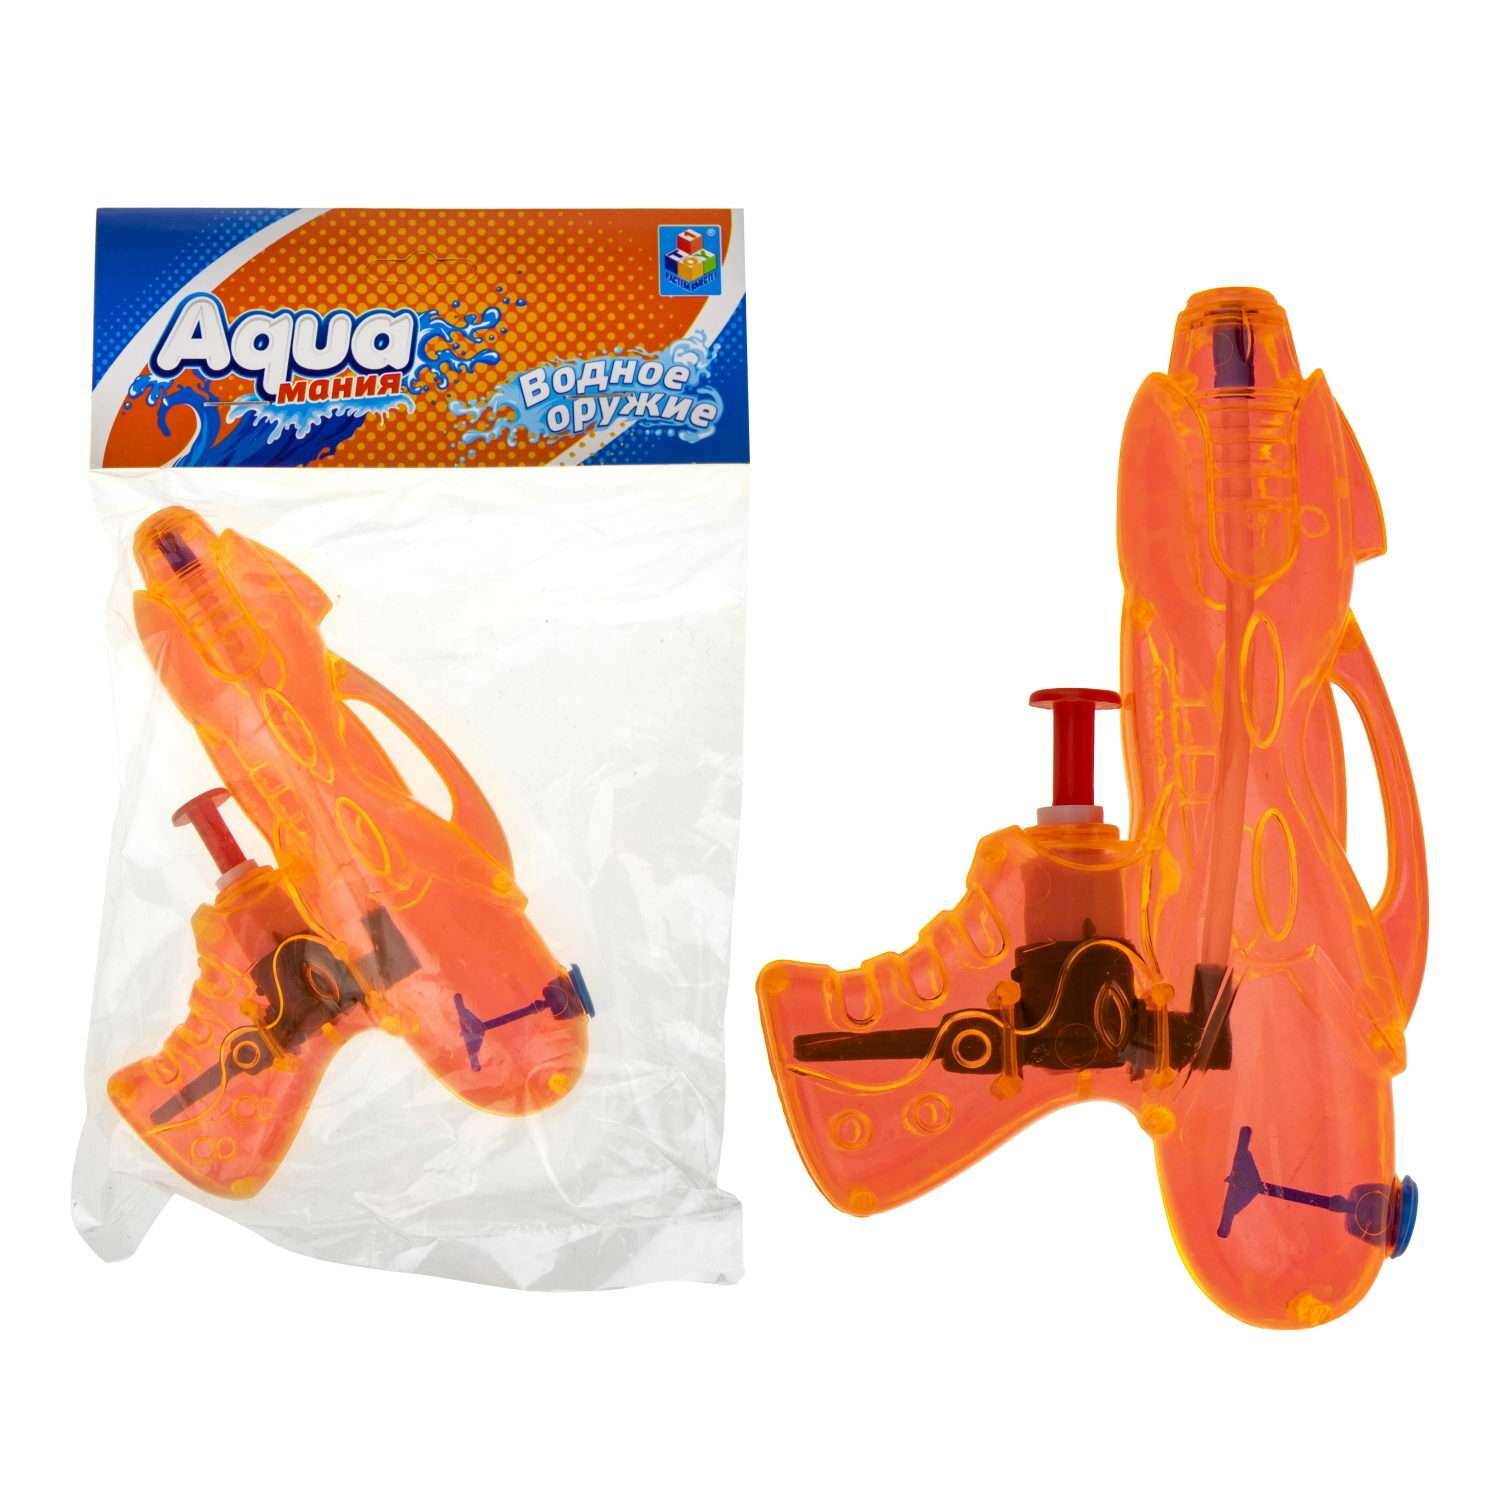 Водяной пистолет Aqua мания игрушечное оружие 12см - фото 3